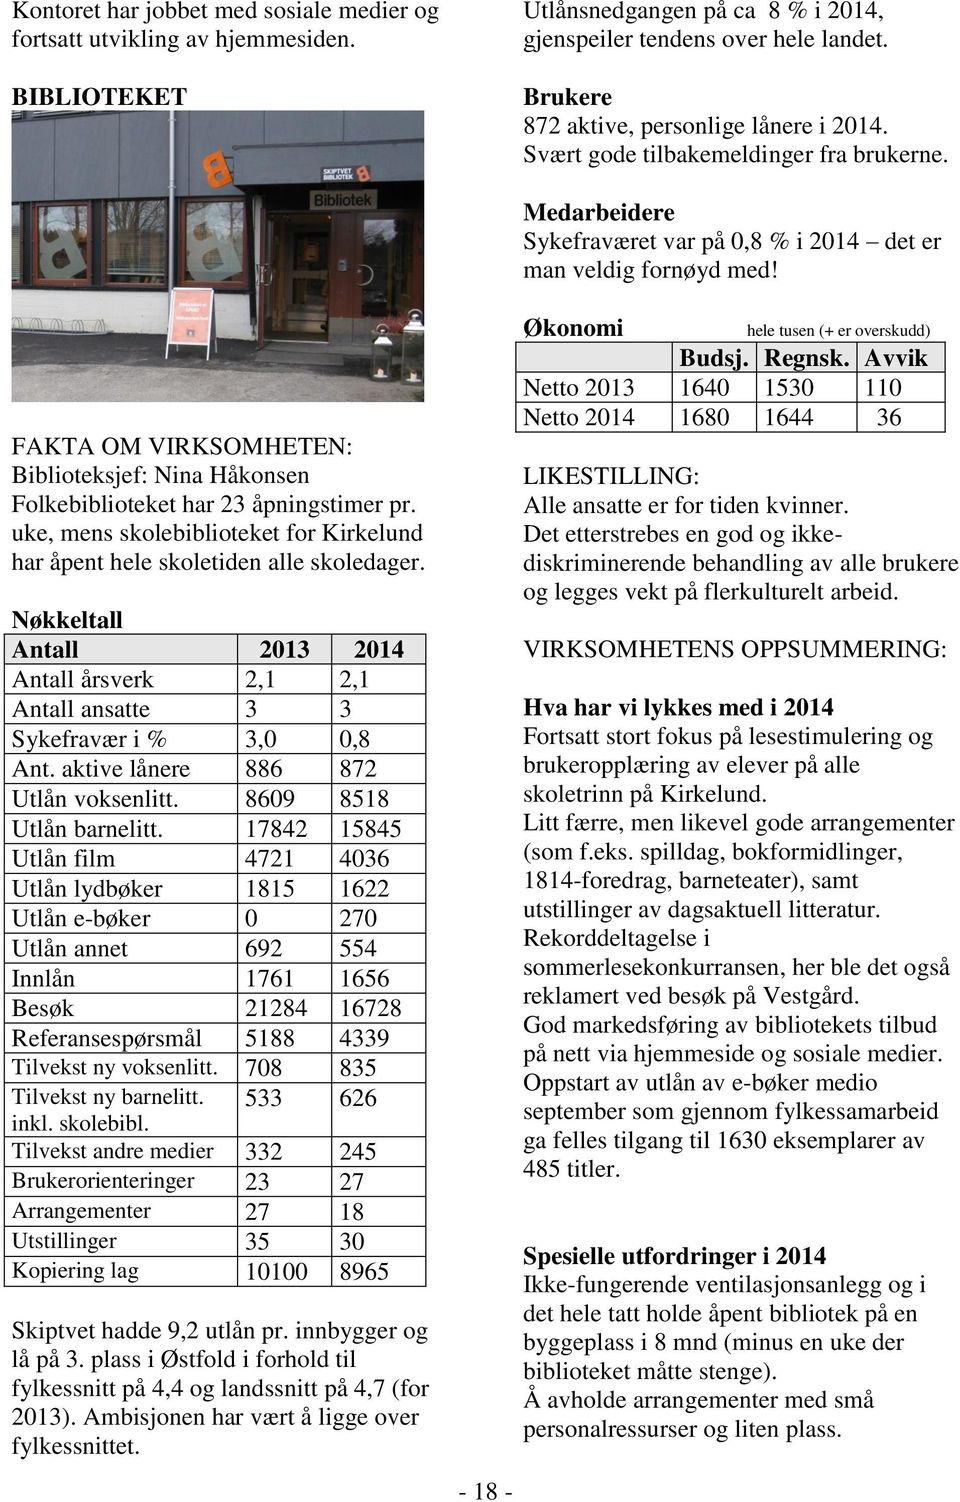 FAKTA OM VIRKSOMHETEN: Biblioteksjef: Nina Håkonsen Folkebiblioteket har 23 åpningstimer pr. uke, mens skolebiblioteket for Kirkelund har åpent hele skoletiden alle skoledager.